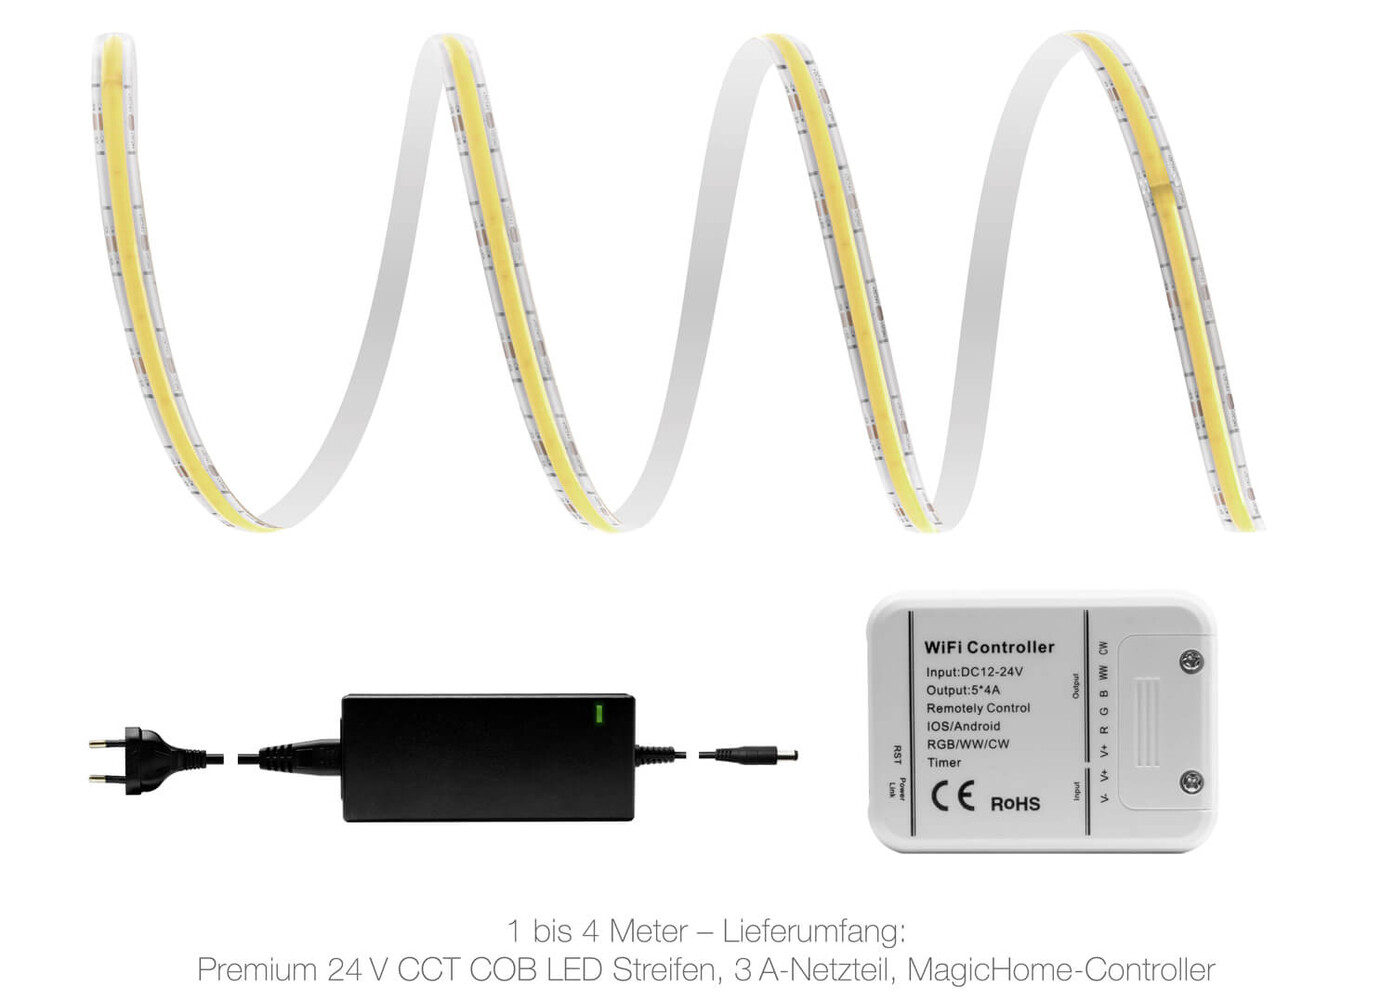 Hochwertiger Premium CCT COB LED Streifen von LED Universum zur Beleuchtung mit WLAN-Funktion